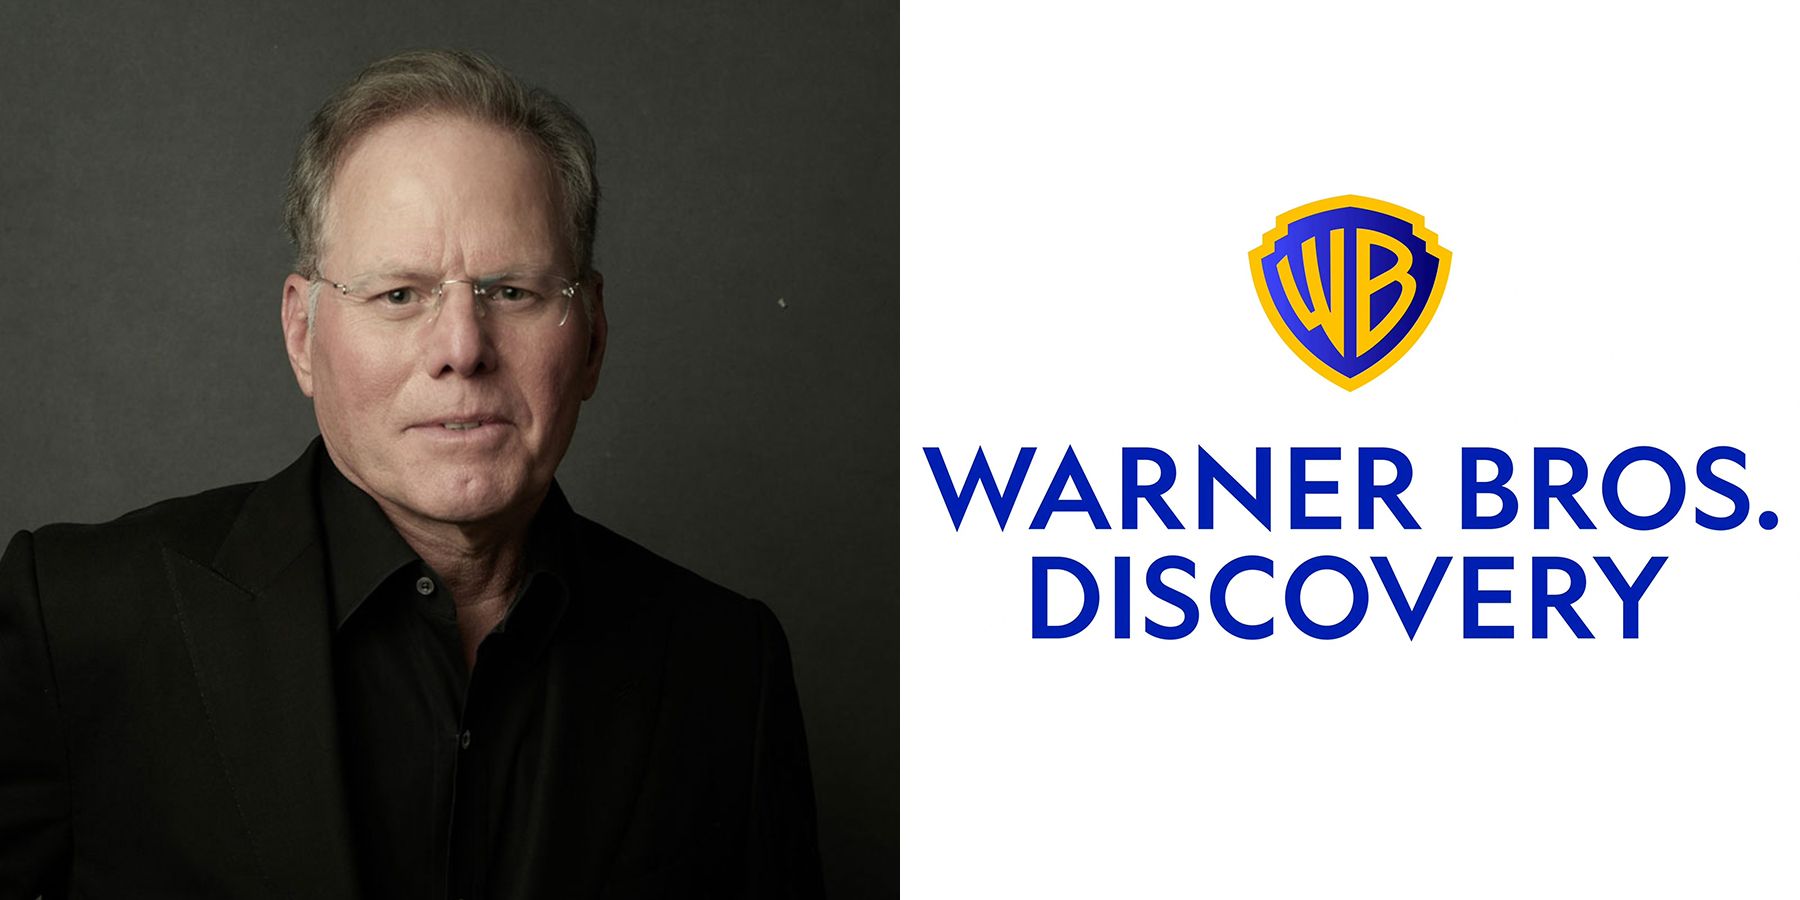 Warner Bros. Discovery CEO David Zaslav Pay Revealed